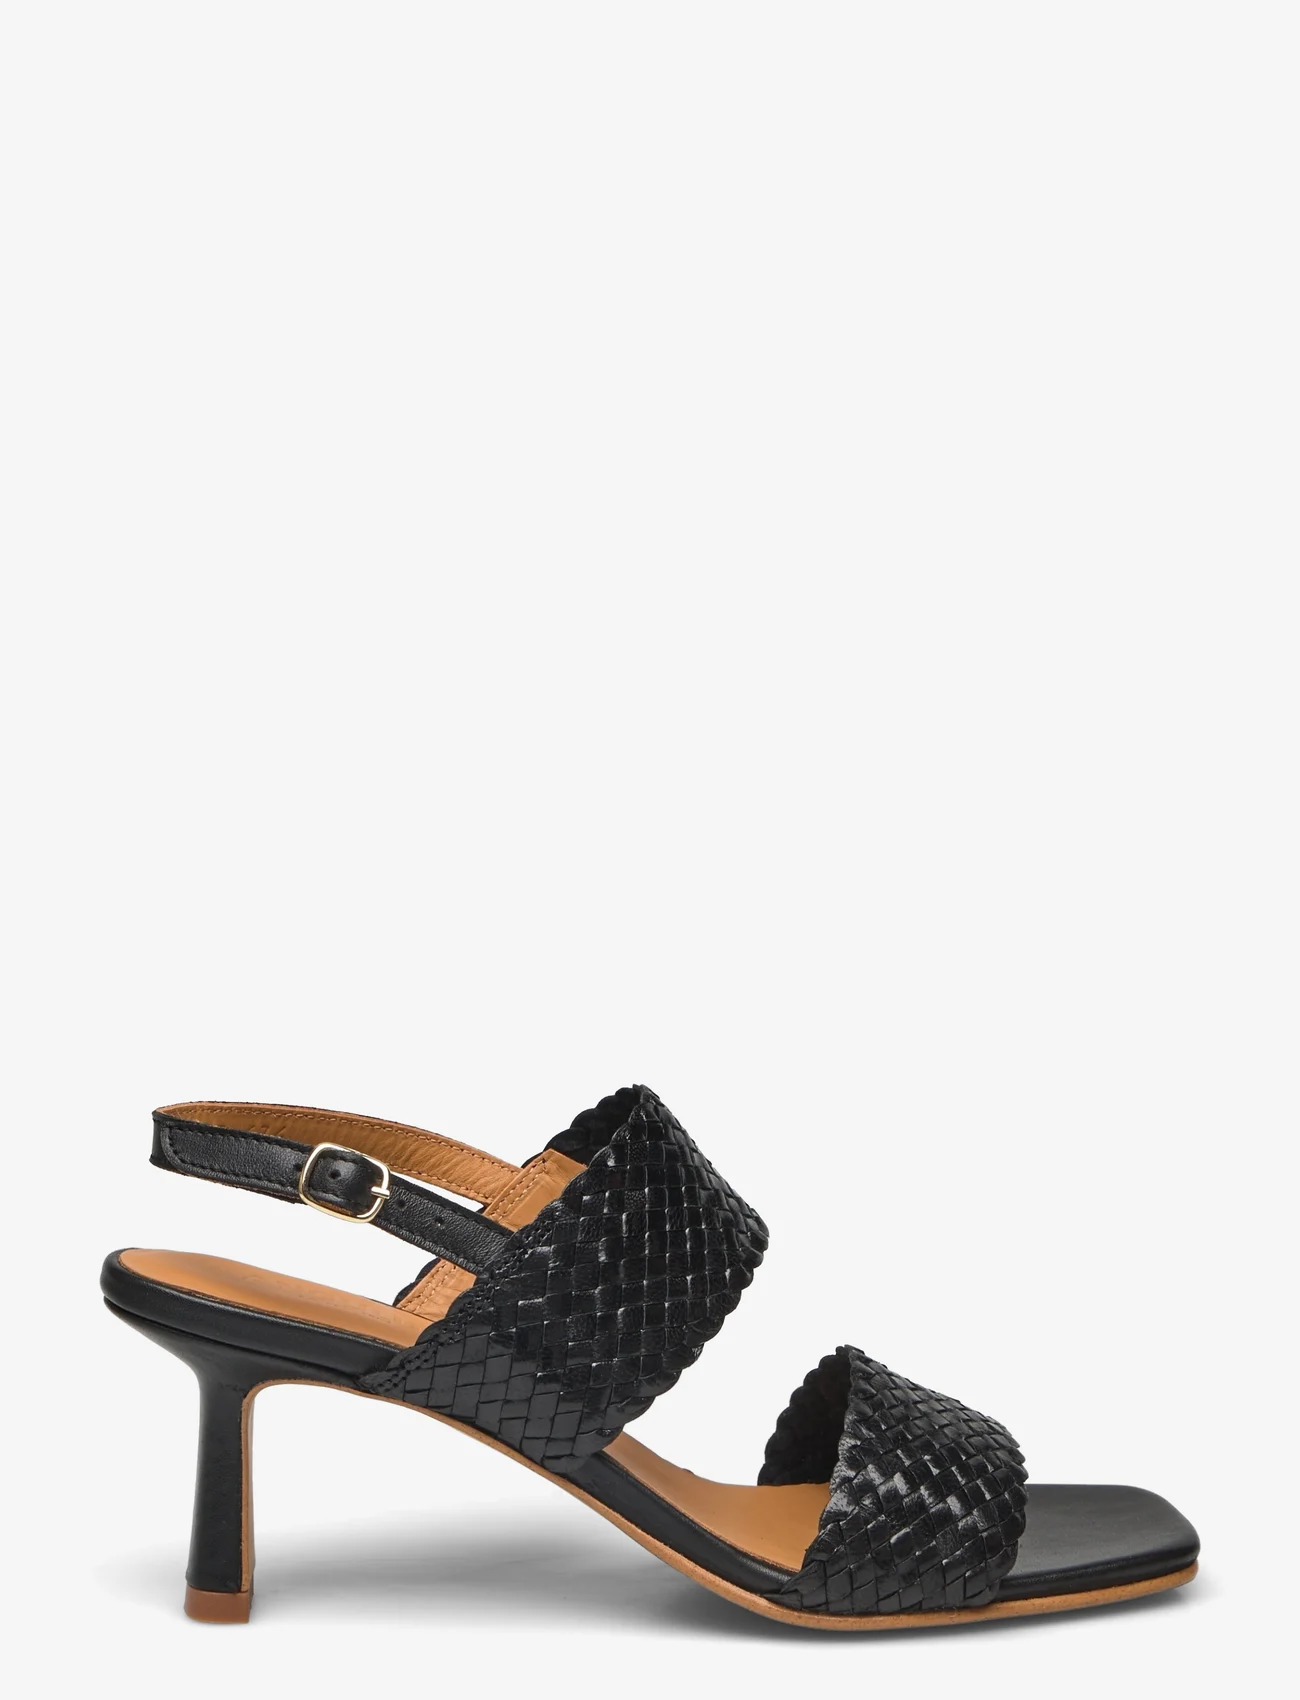 ANGULUS - Sandals - Block heels - sandały na obcasie - 2072/1604 black/black - 1